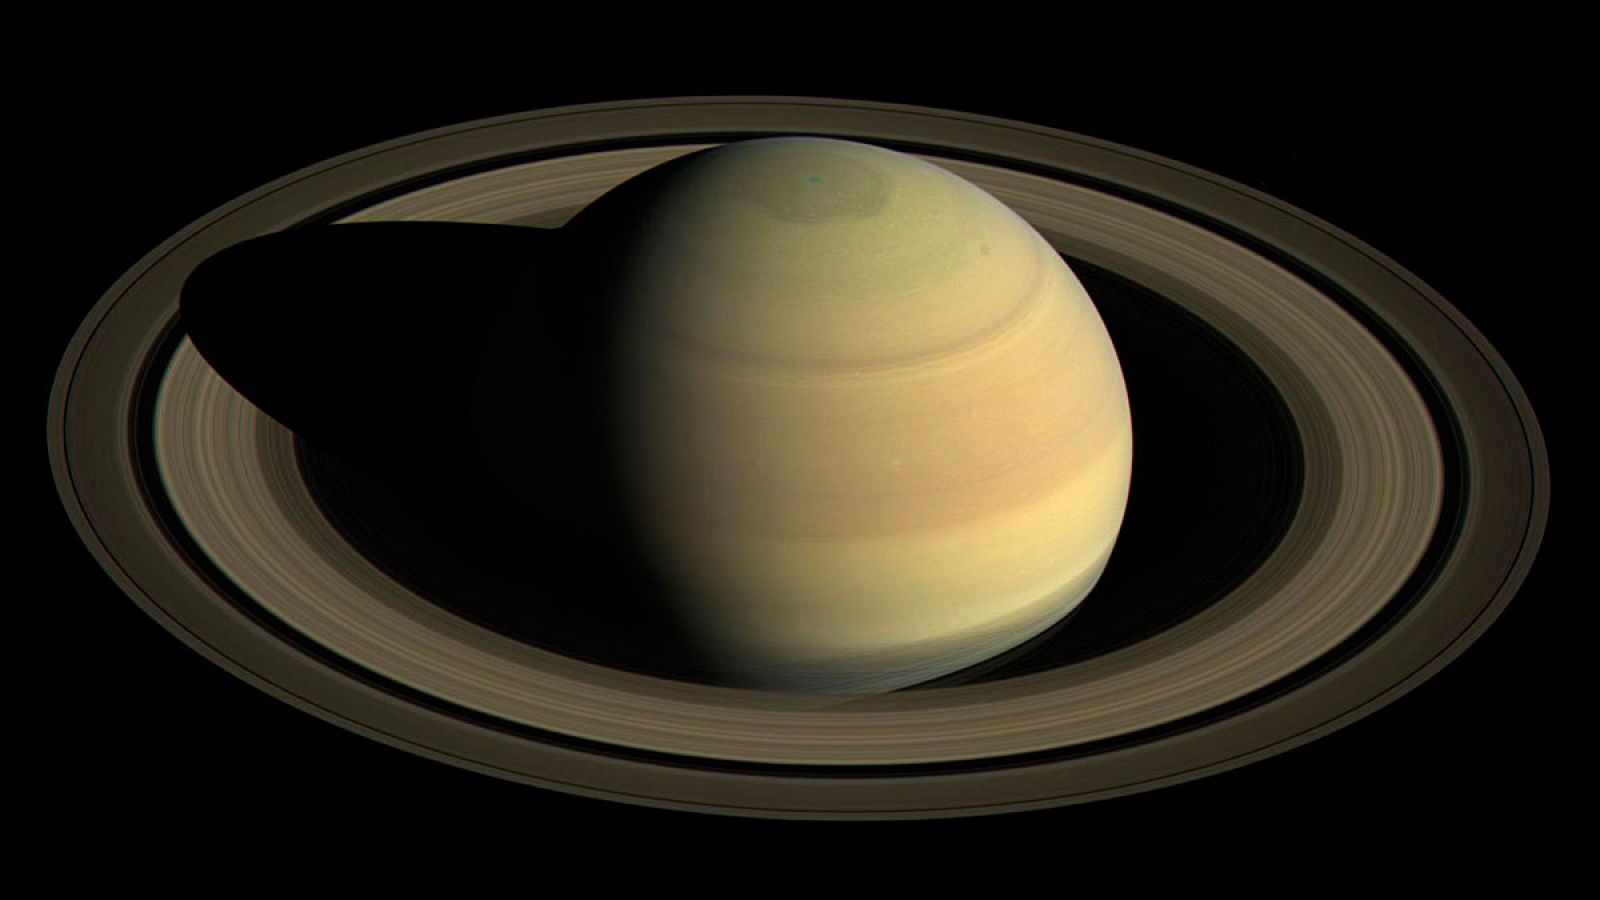 Saturno es uno de los planetas más reconocibles del Sistema Solar gracias a sus emblemáticos anillos.